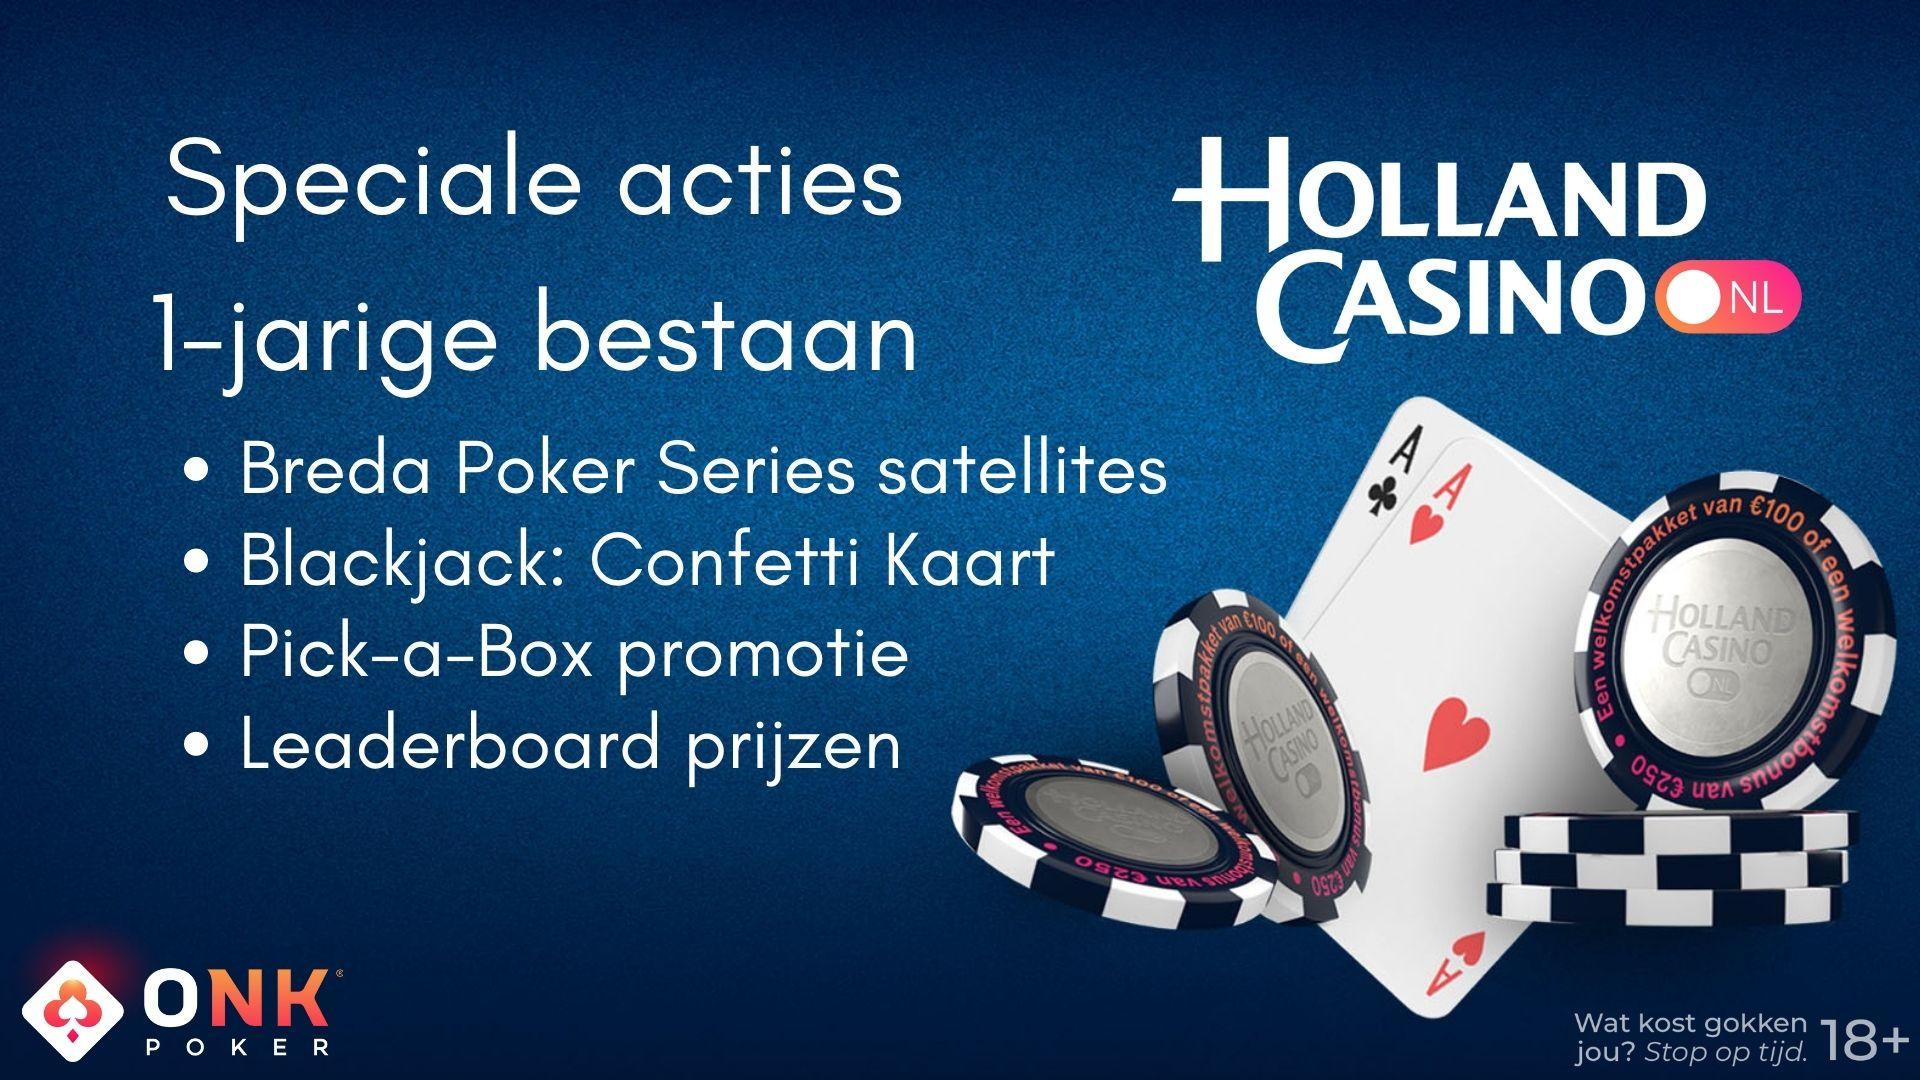 Holland Casino Online pakt uit met viering van 1 jarig bestaan